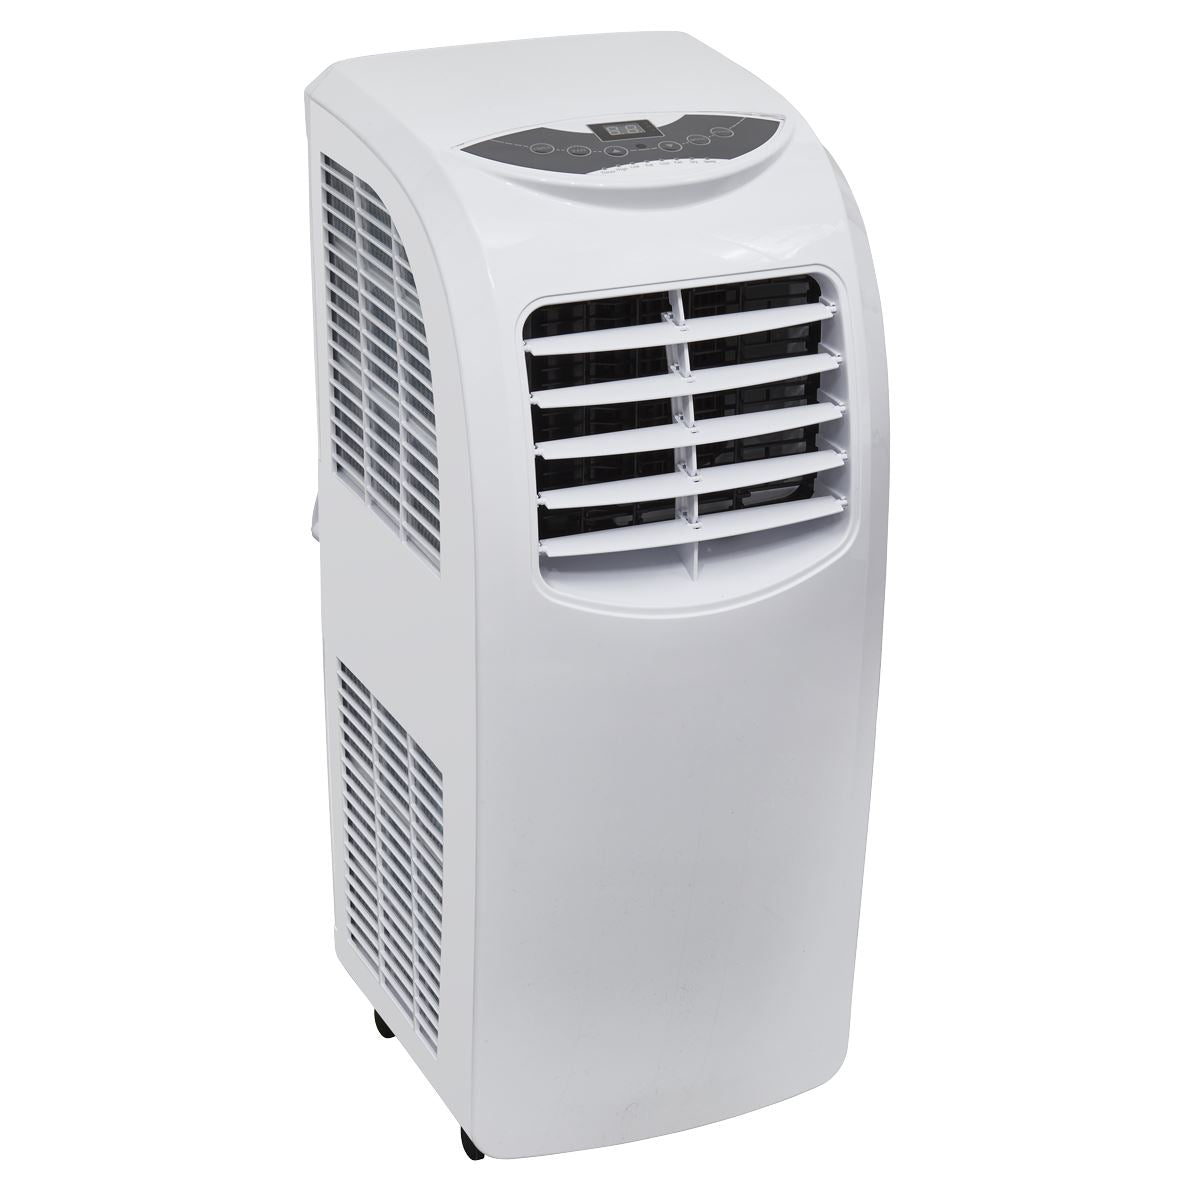 Sealey Portable Air Conditioner/Dehumidifier/Air Cooler 9,000Btu/hr